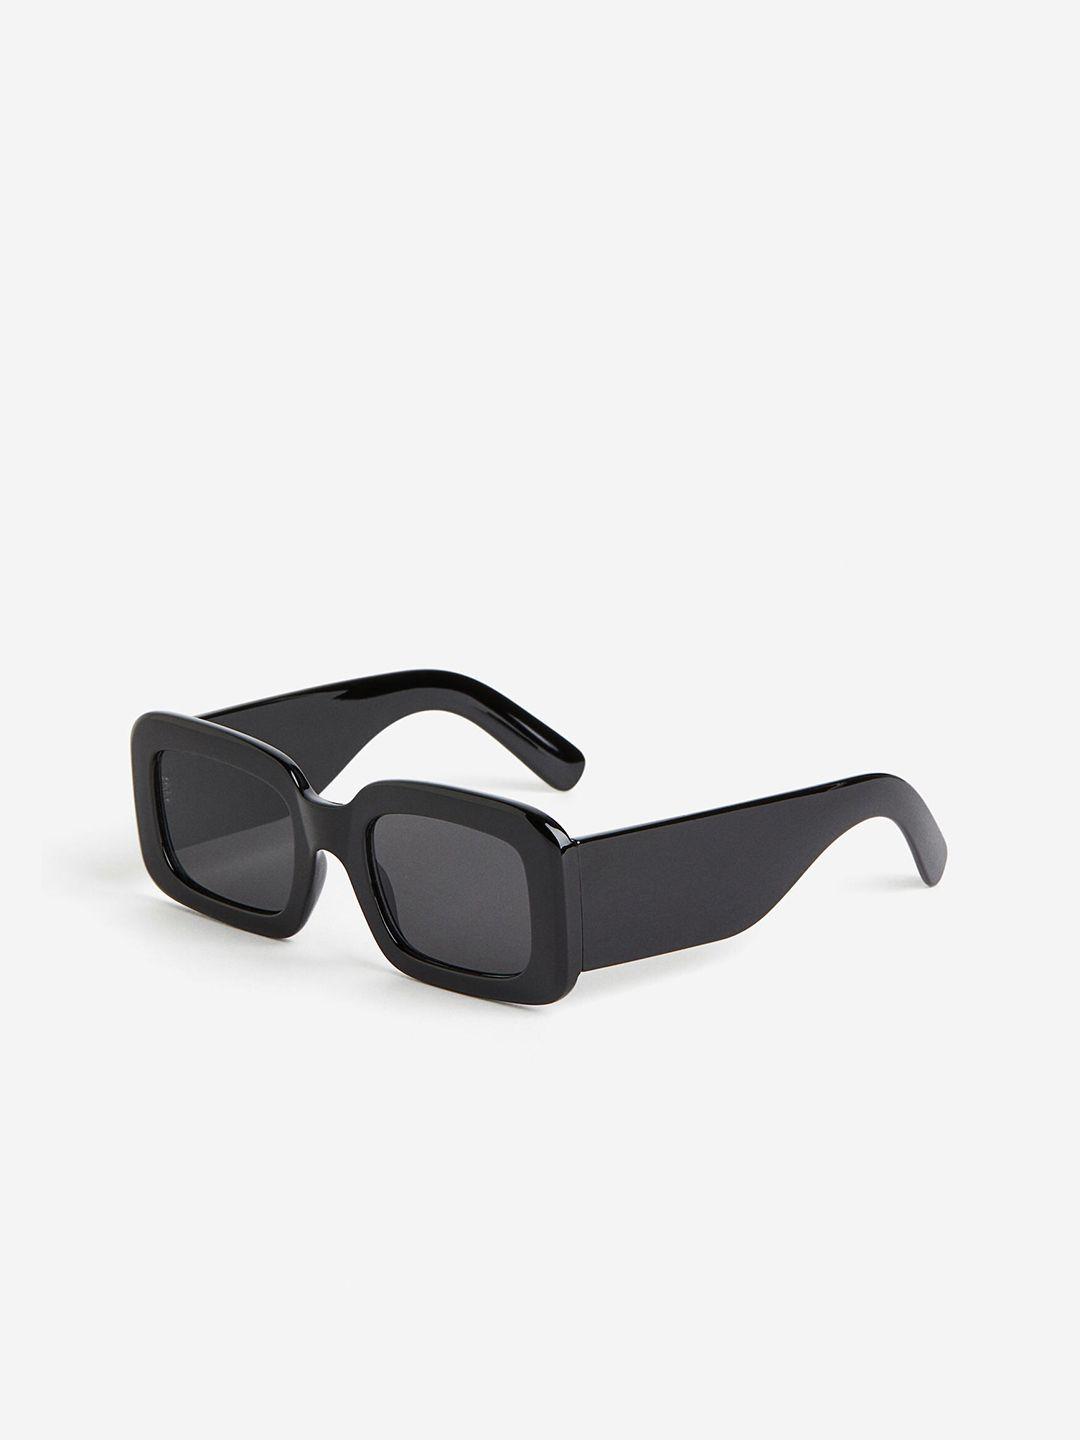 h&m-women-rectangular-sunglasses